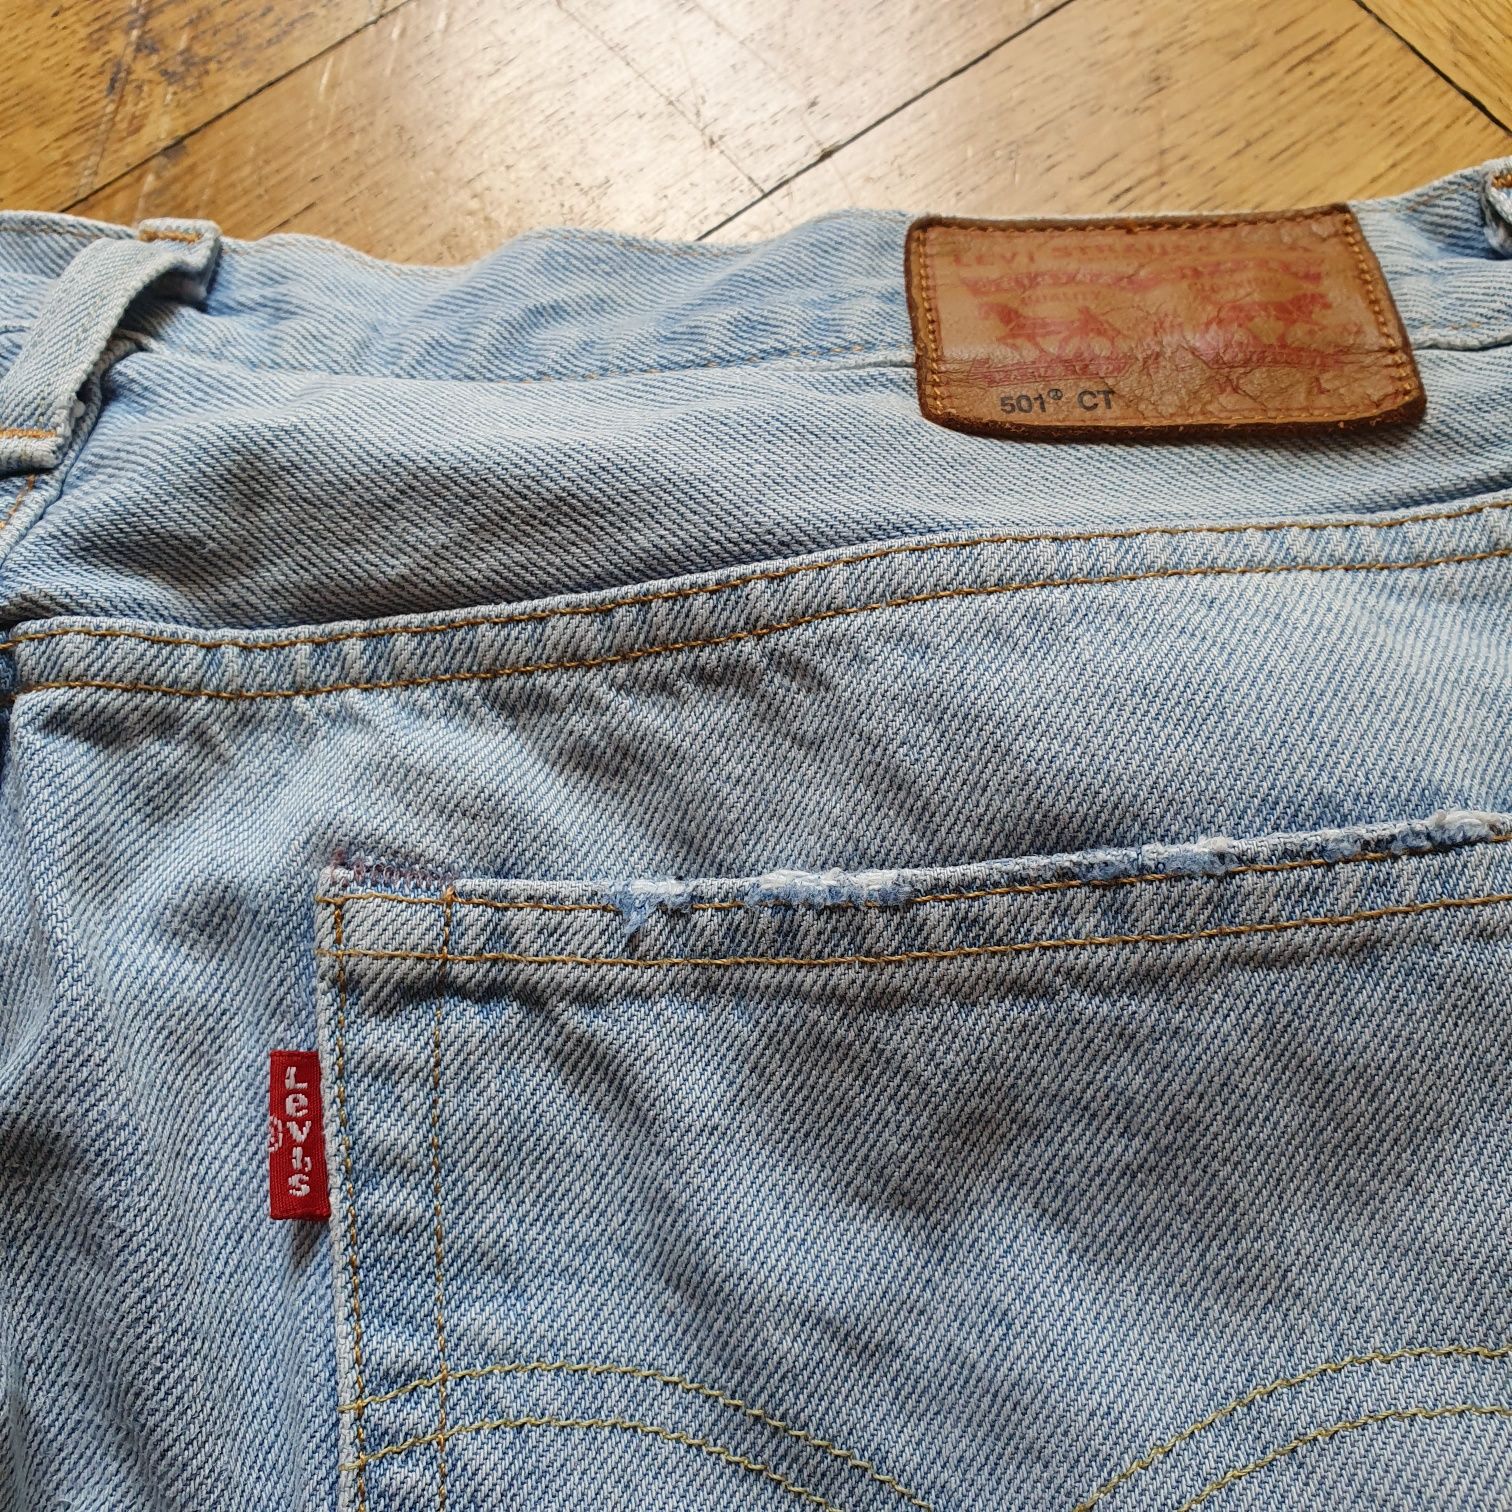 Levi's strauss  501 CT Jeansy jasne petite spodnie jeansowe rozdarcia